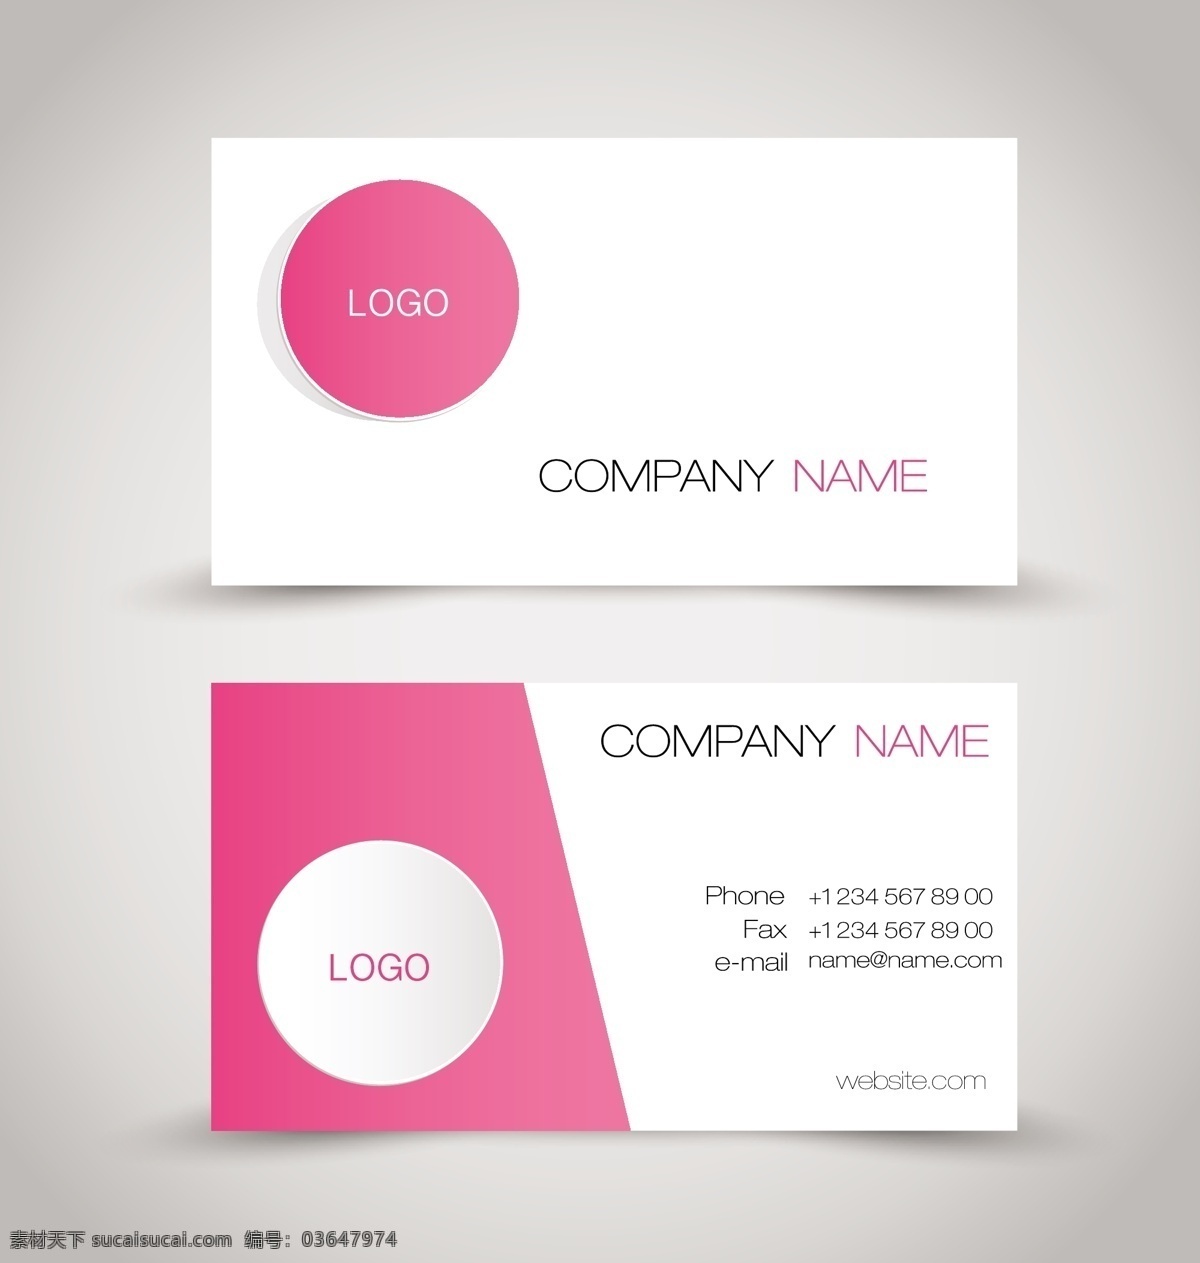 粉色 名片 矢量 模板 商务 卡片 矢量素材 设计素材